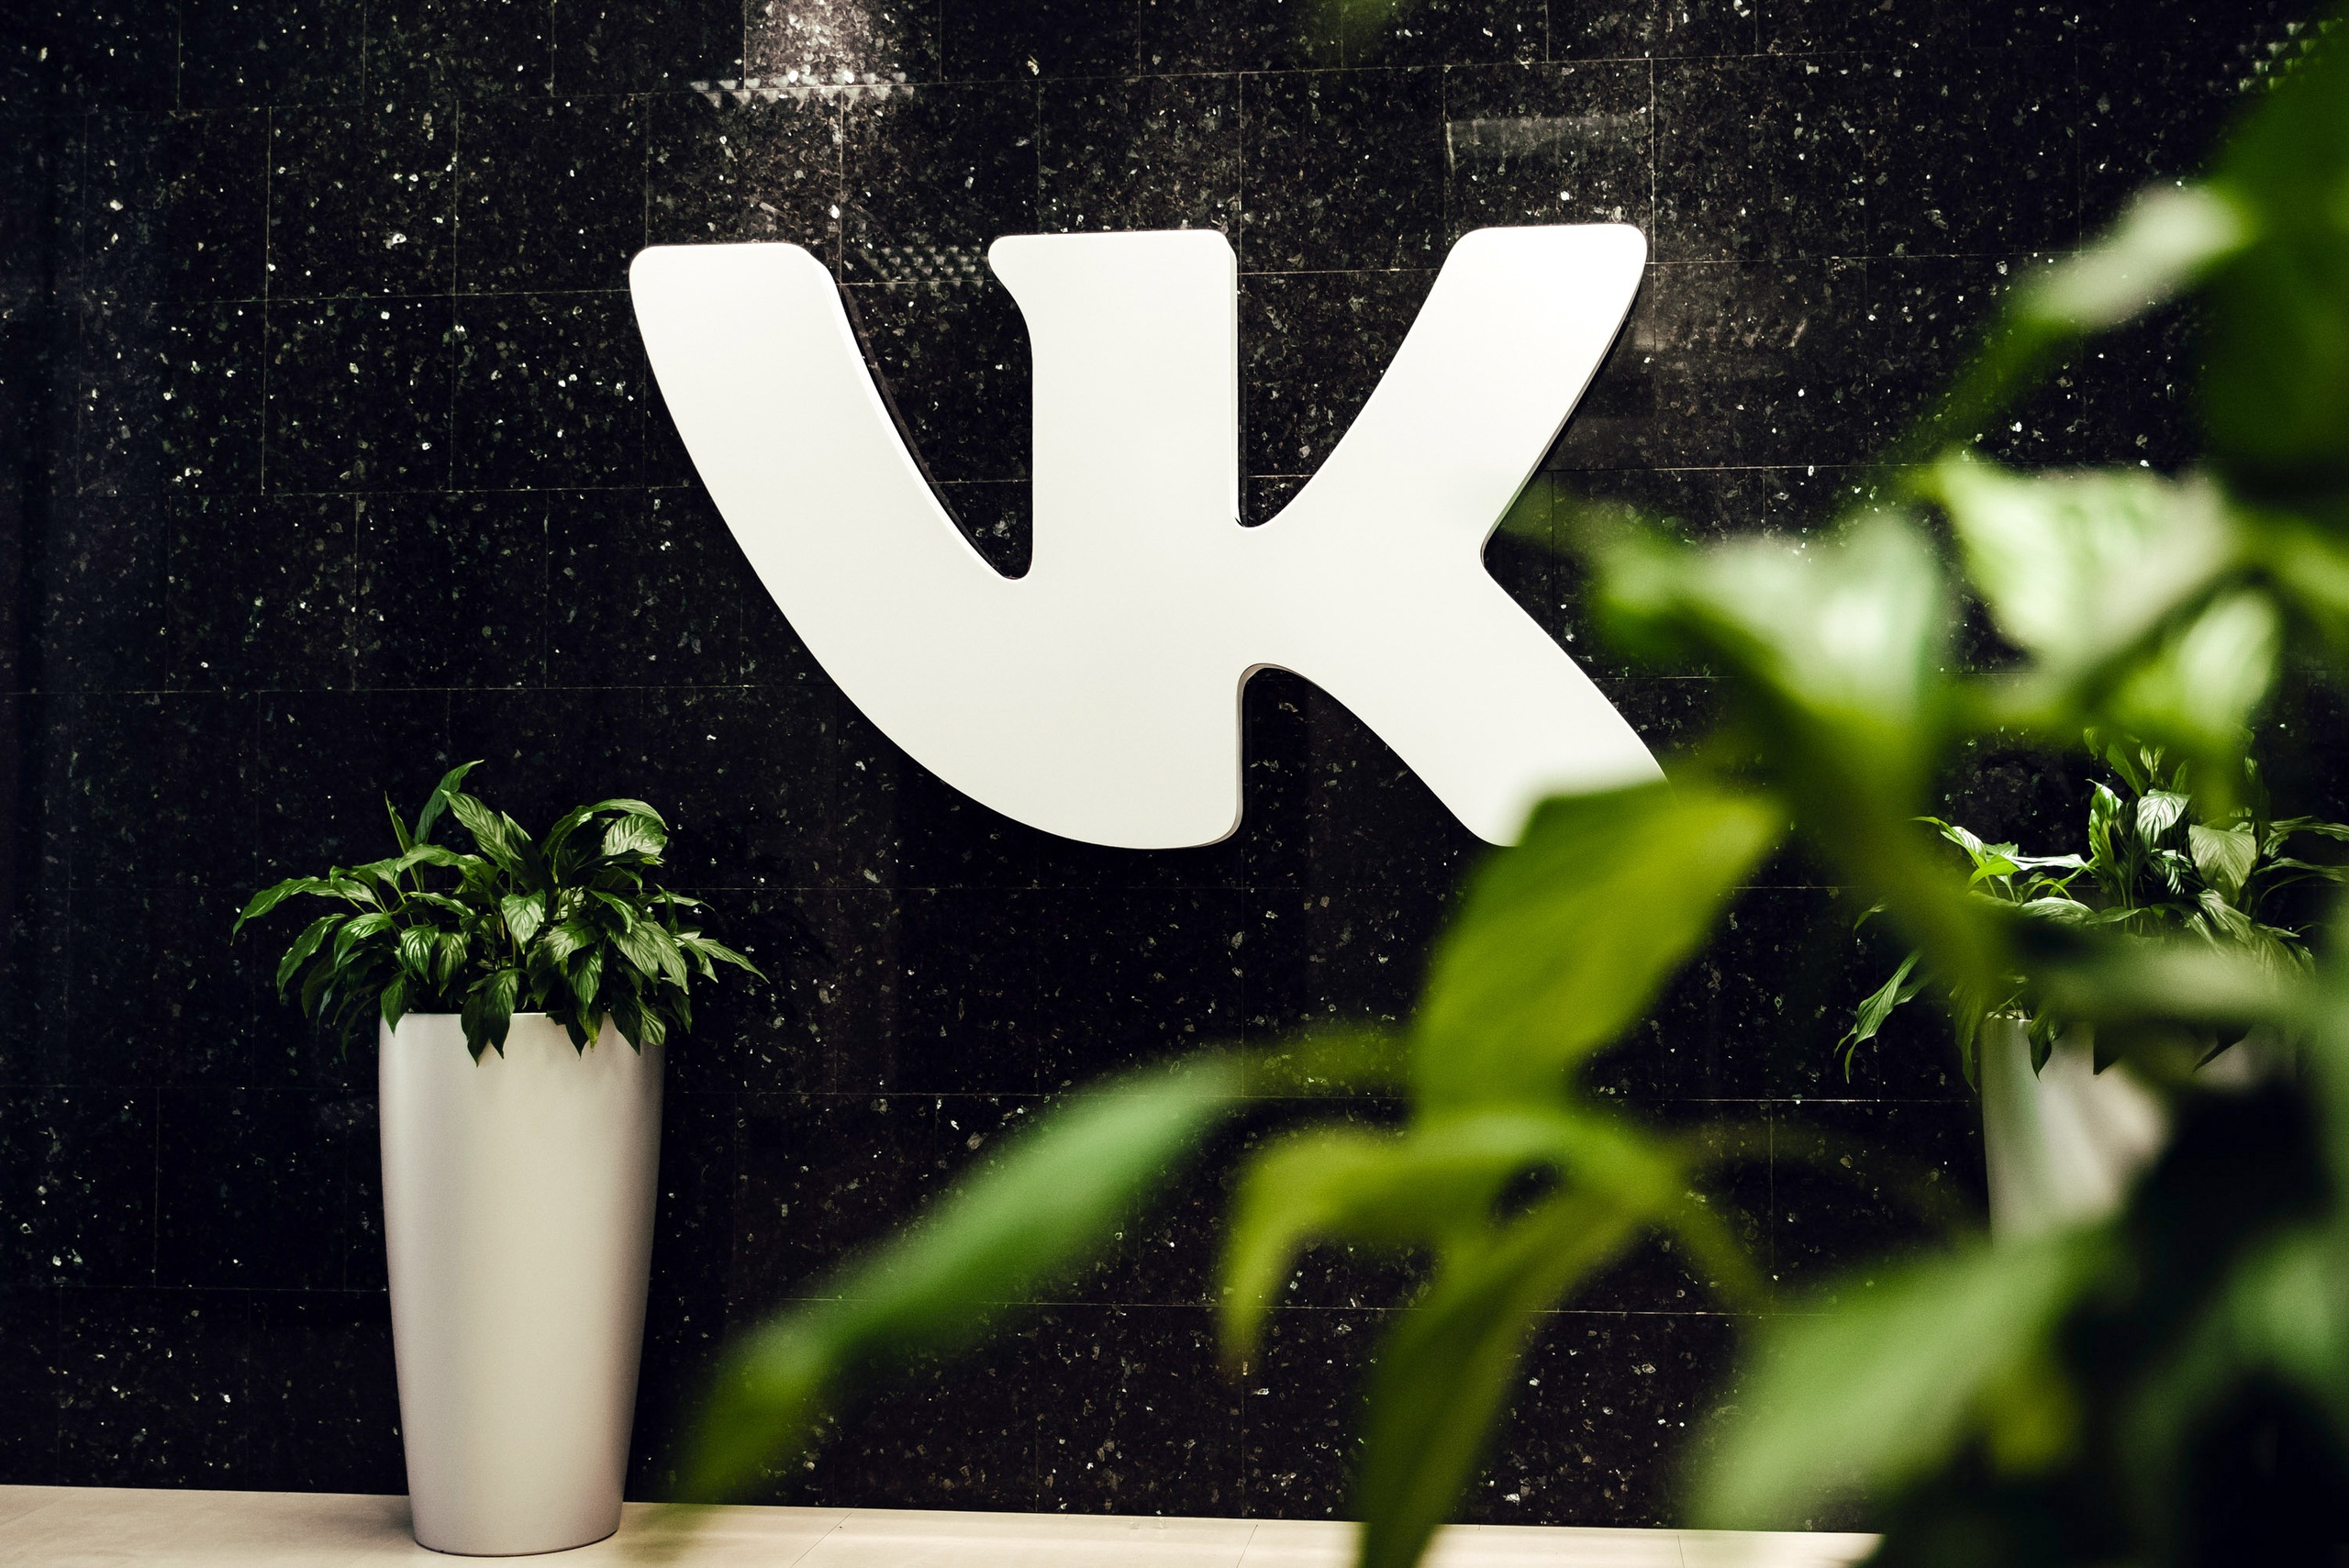 "ВКонтакте" и "Одноклассники" начнут помечать публикации с недостоверной информацией — пока в тестовом режиме